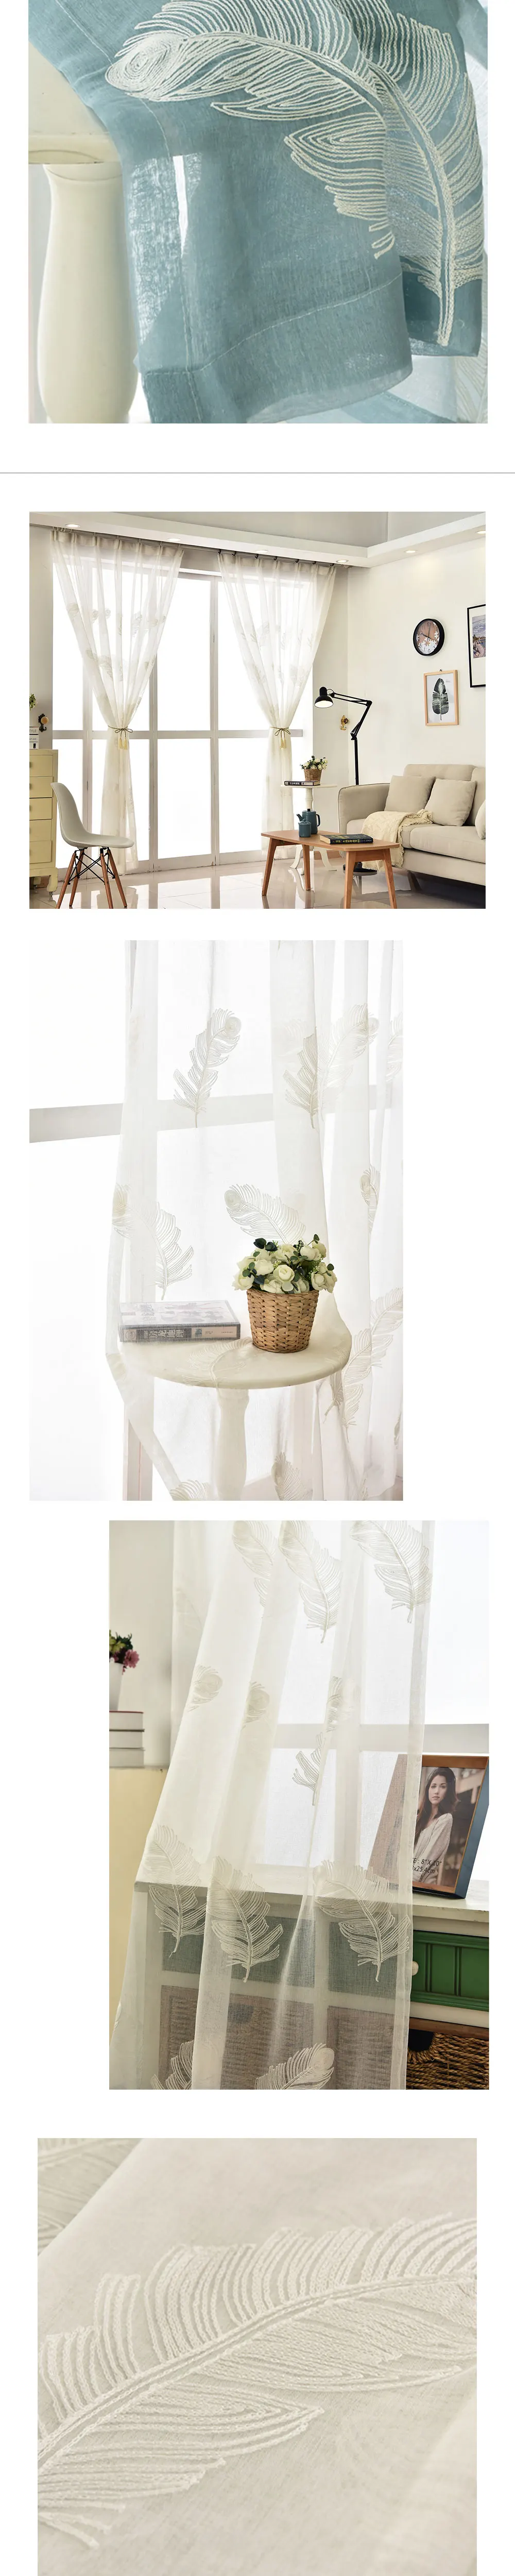 LOZUJOJU 1 шт. цветовые блоки стиль современные шторы в клетку в полоску Дизайн Модный домашний декор драпировки простой матч Тюль спальня